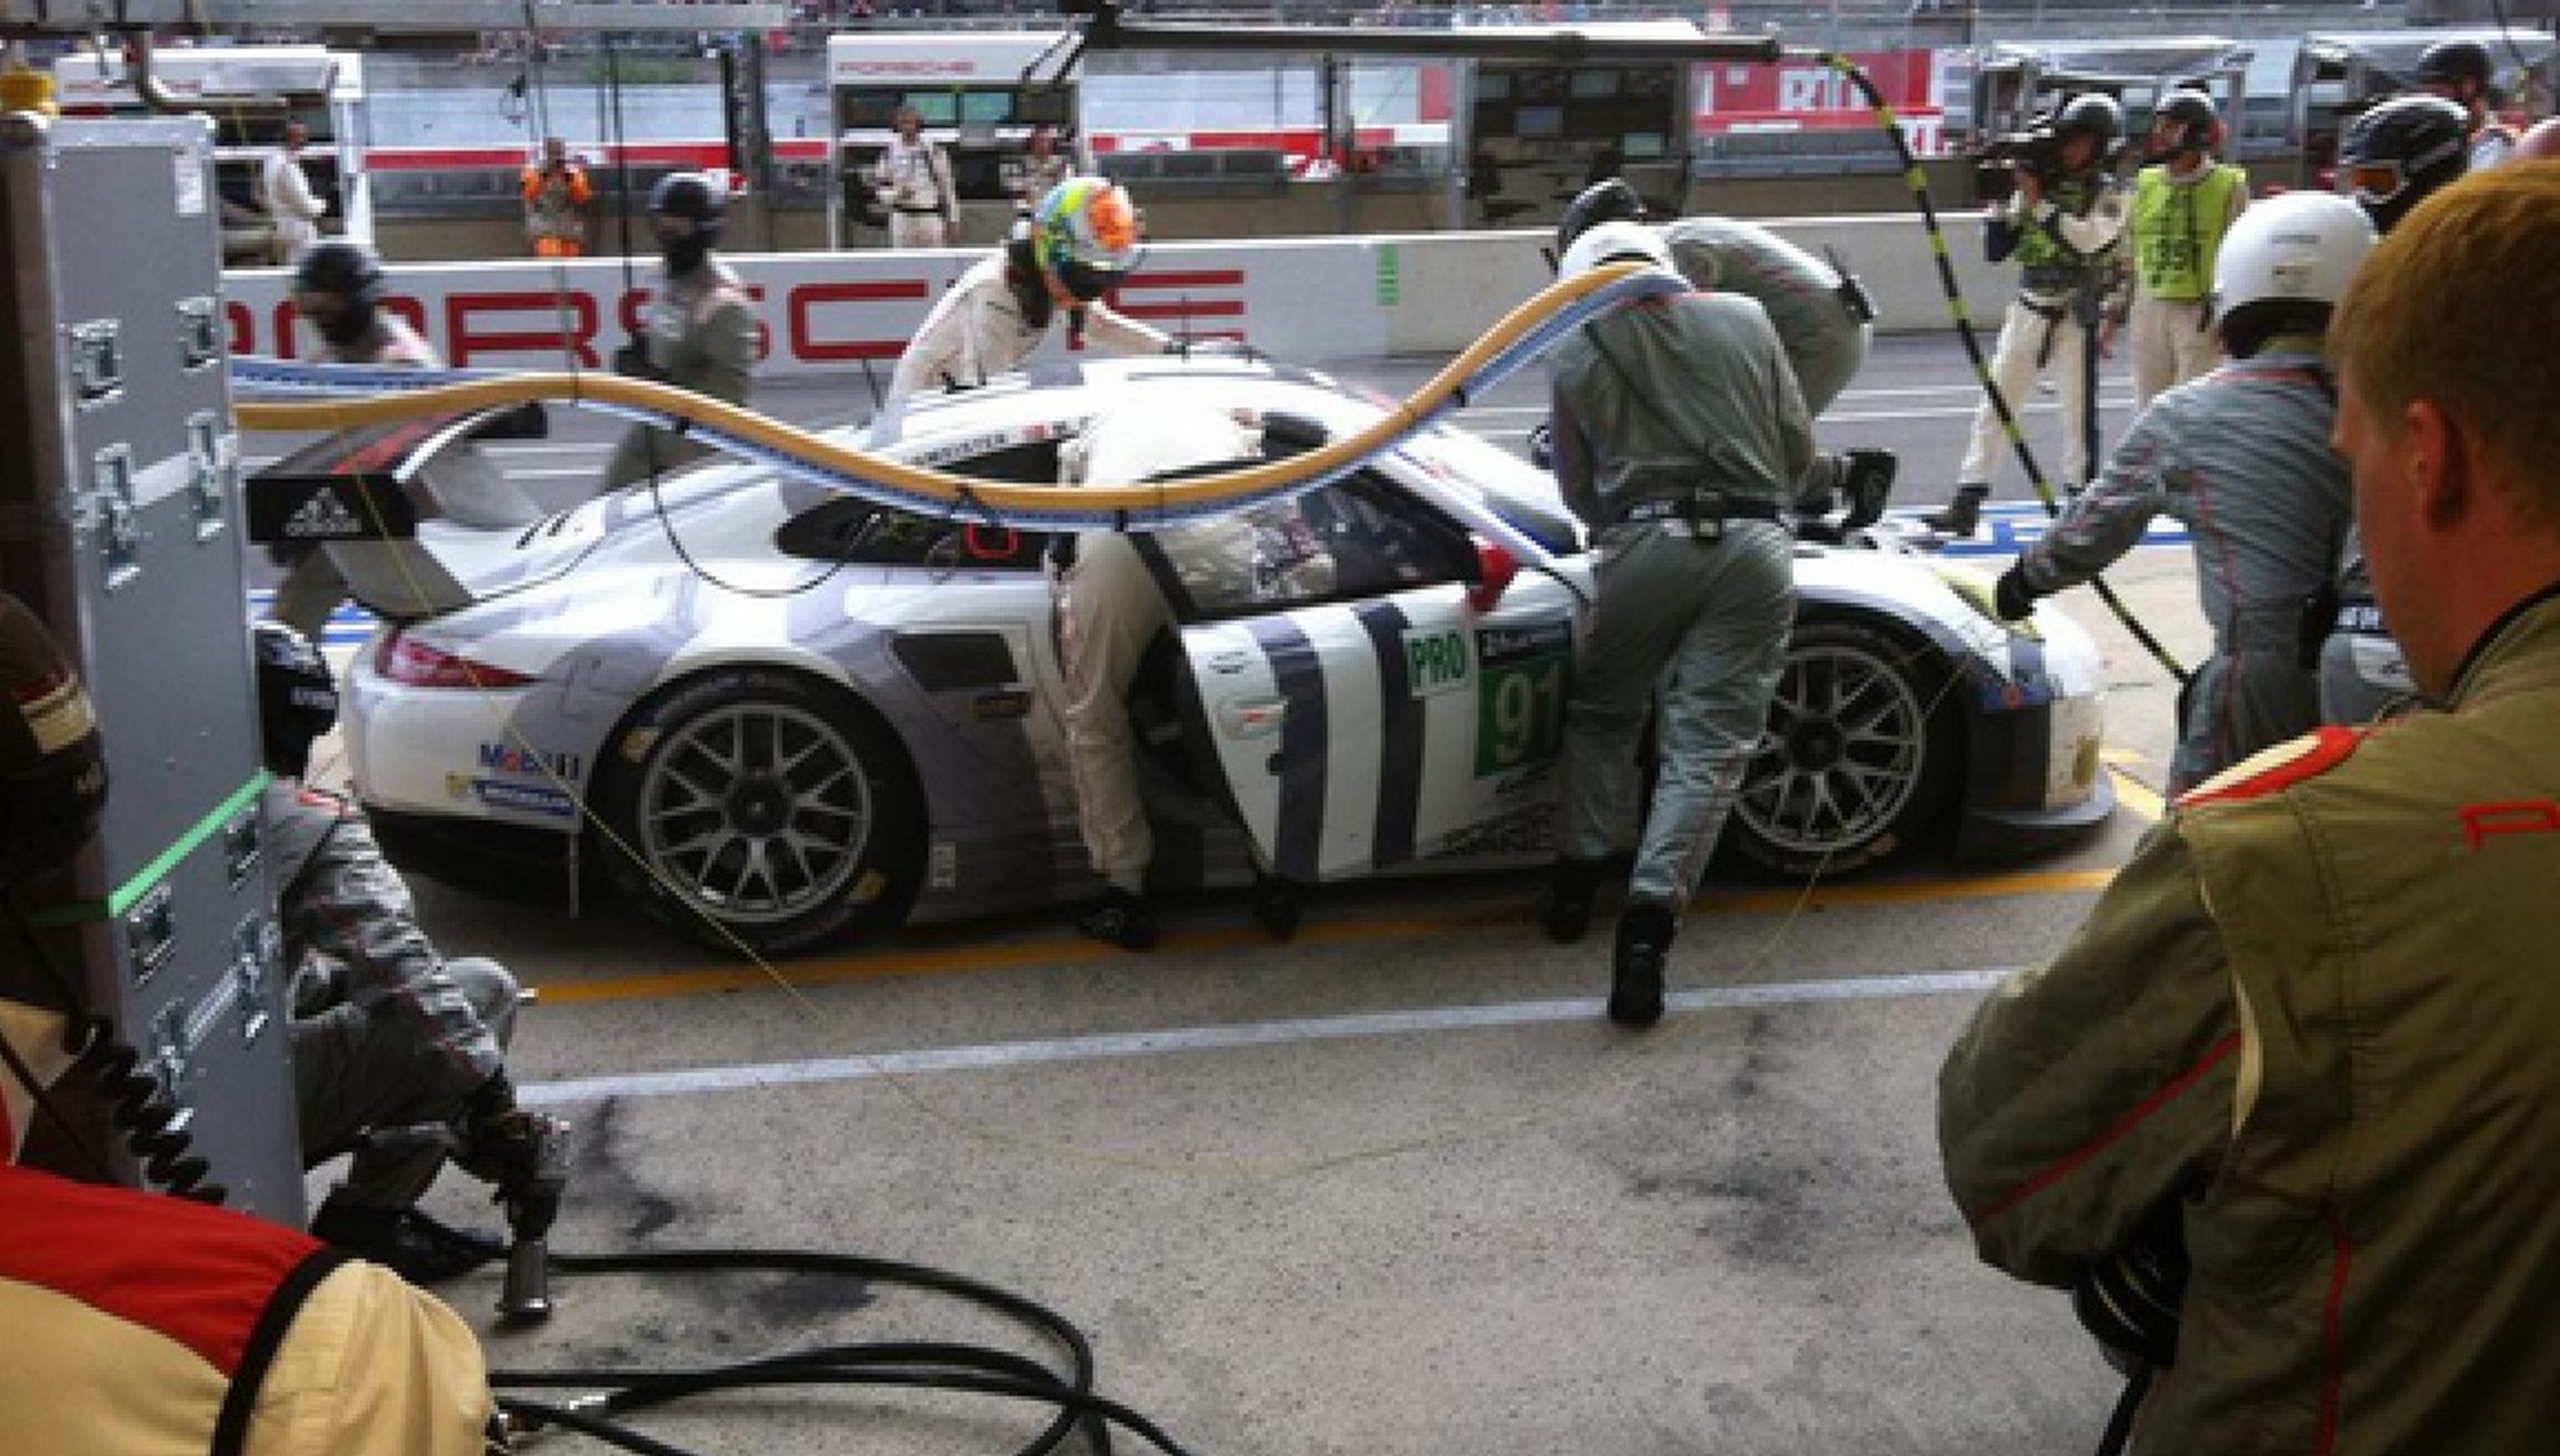 24-Horas-Le-Mans-2015-box-Porsche-parada-boxes